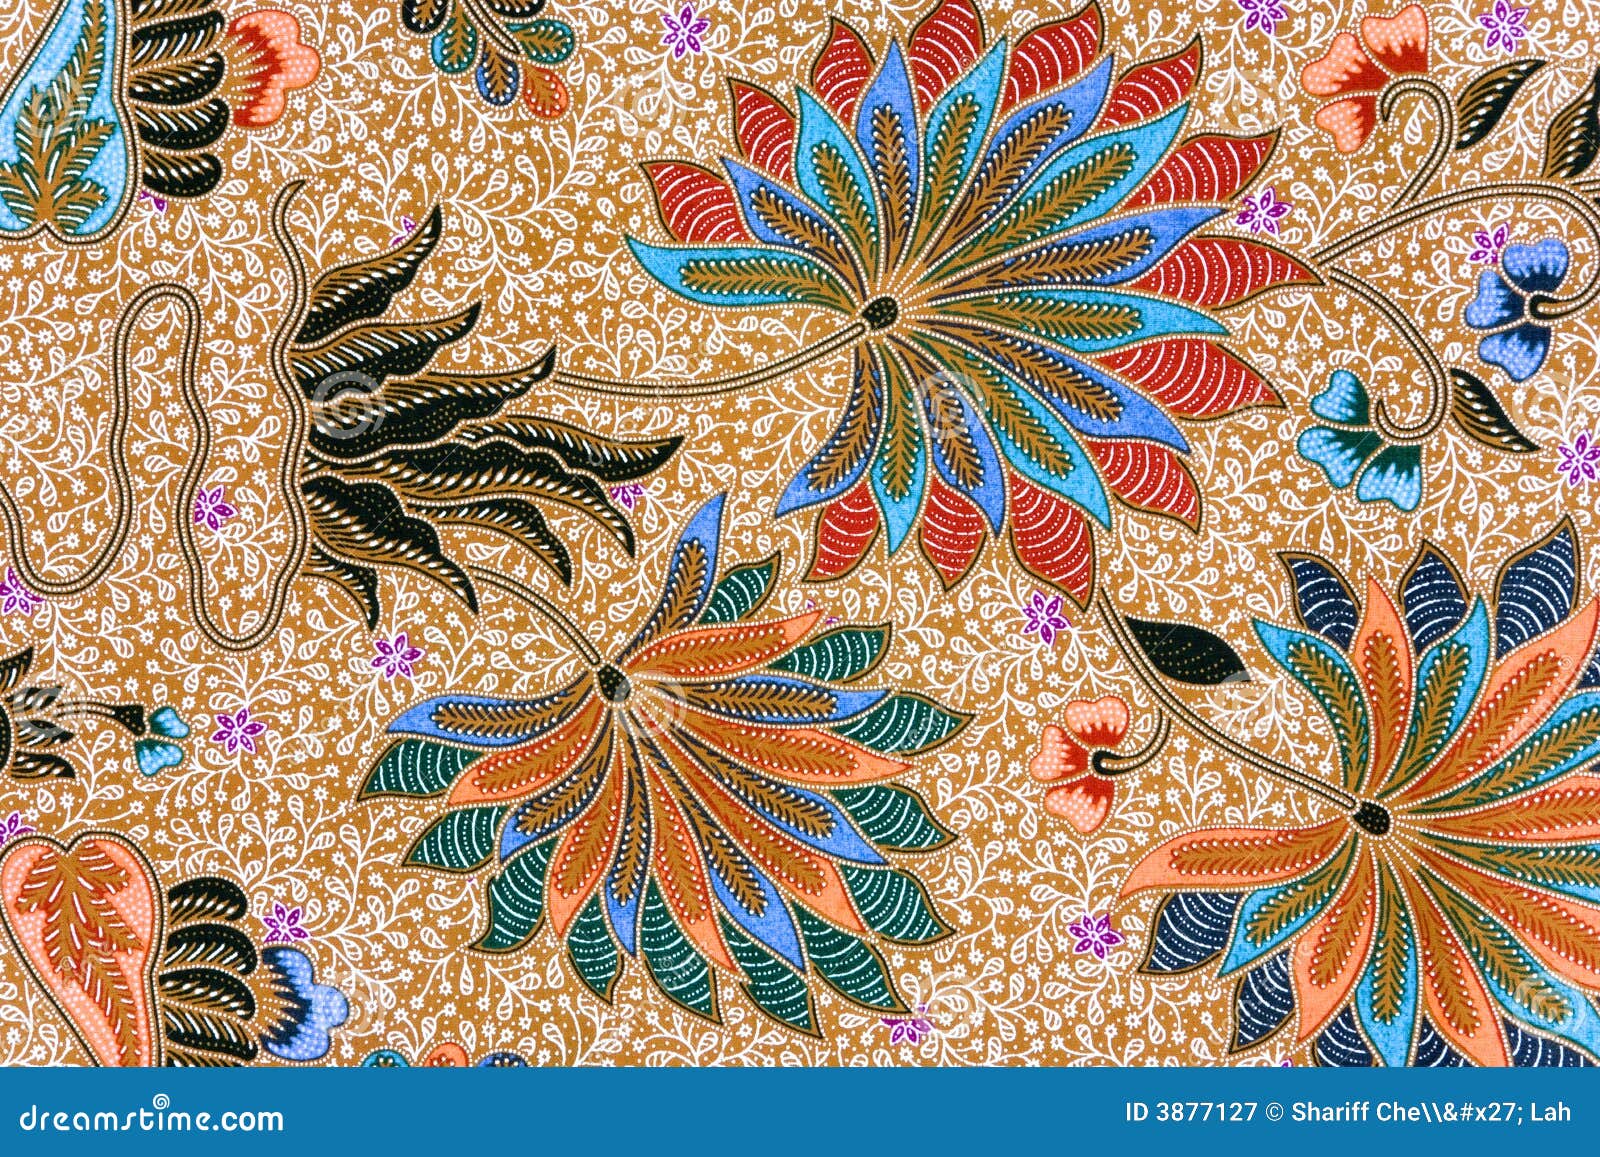  Indonesian  Batik  Sarong stock image  Image  of background 